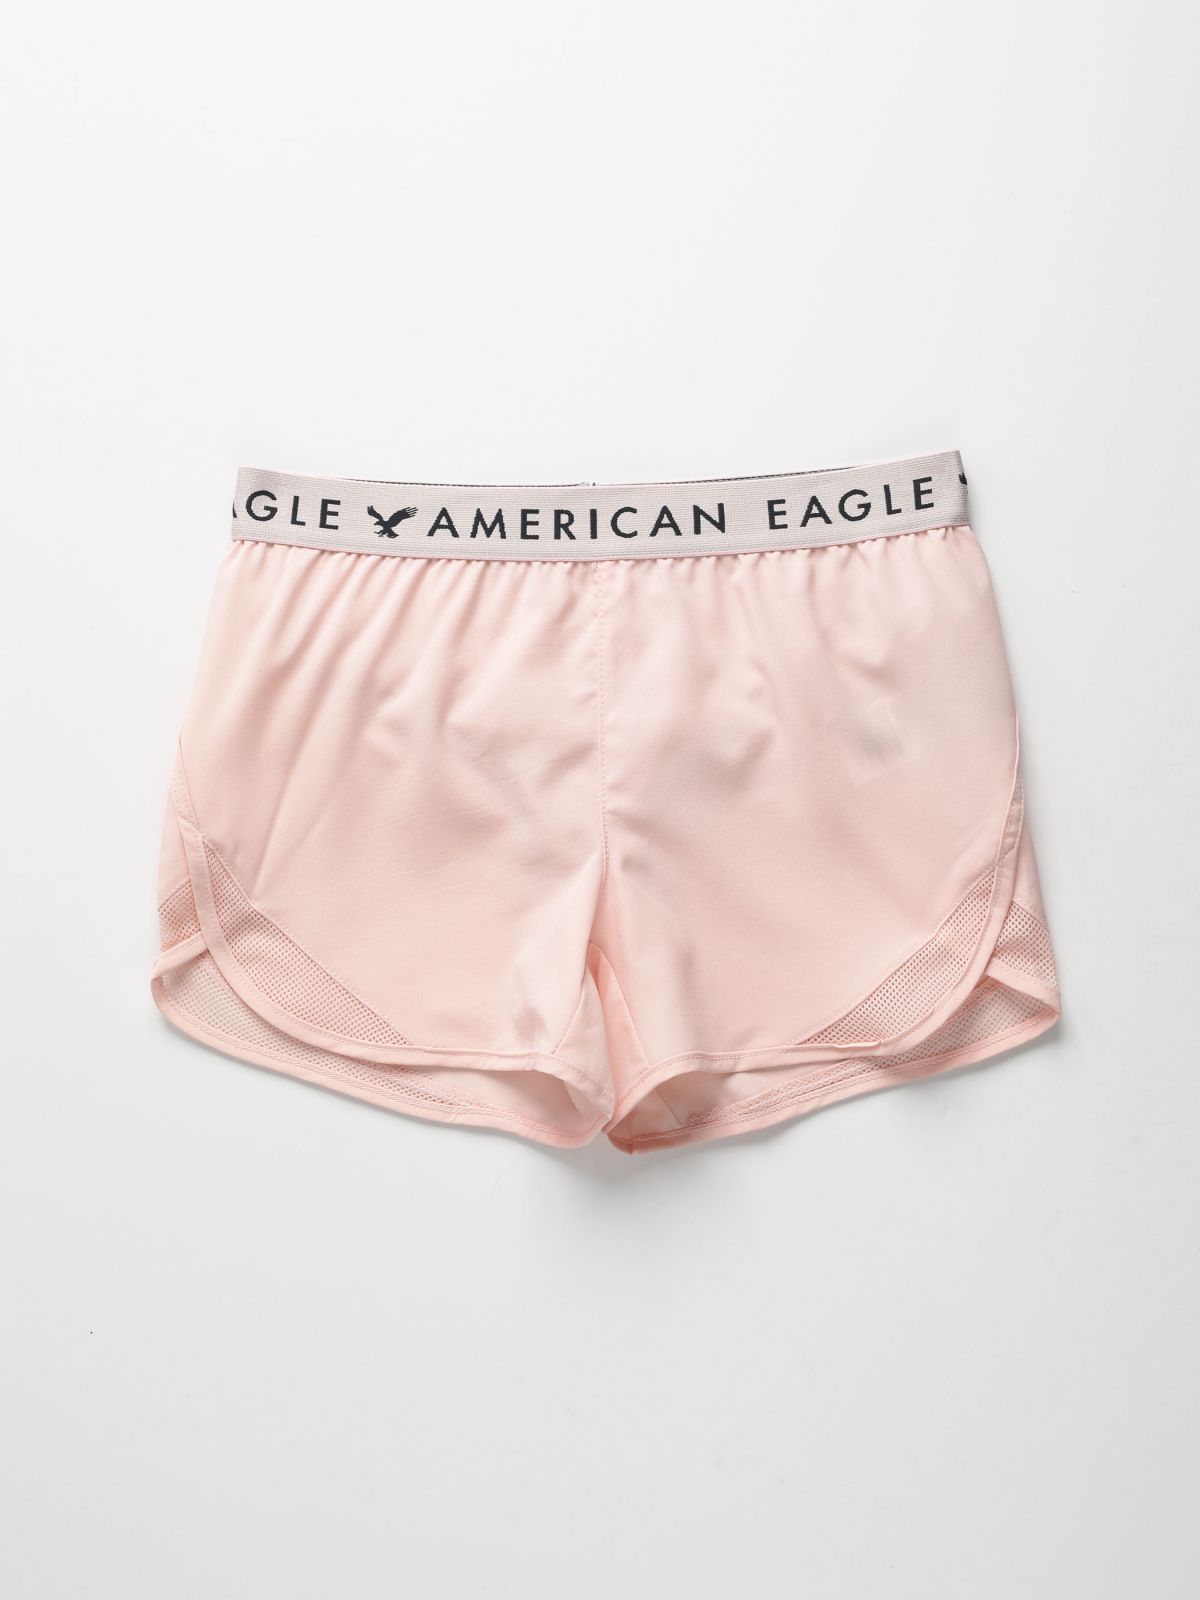  מכנסי אקטיב קצרים עם גומי לוגו / בנות של AMERICAN EAGLE